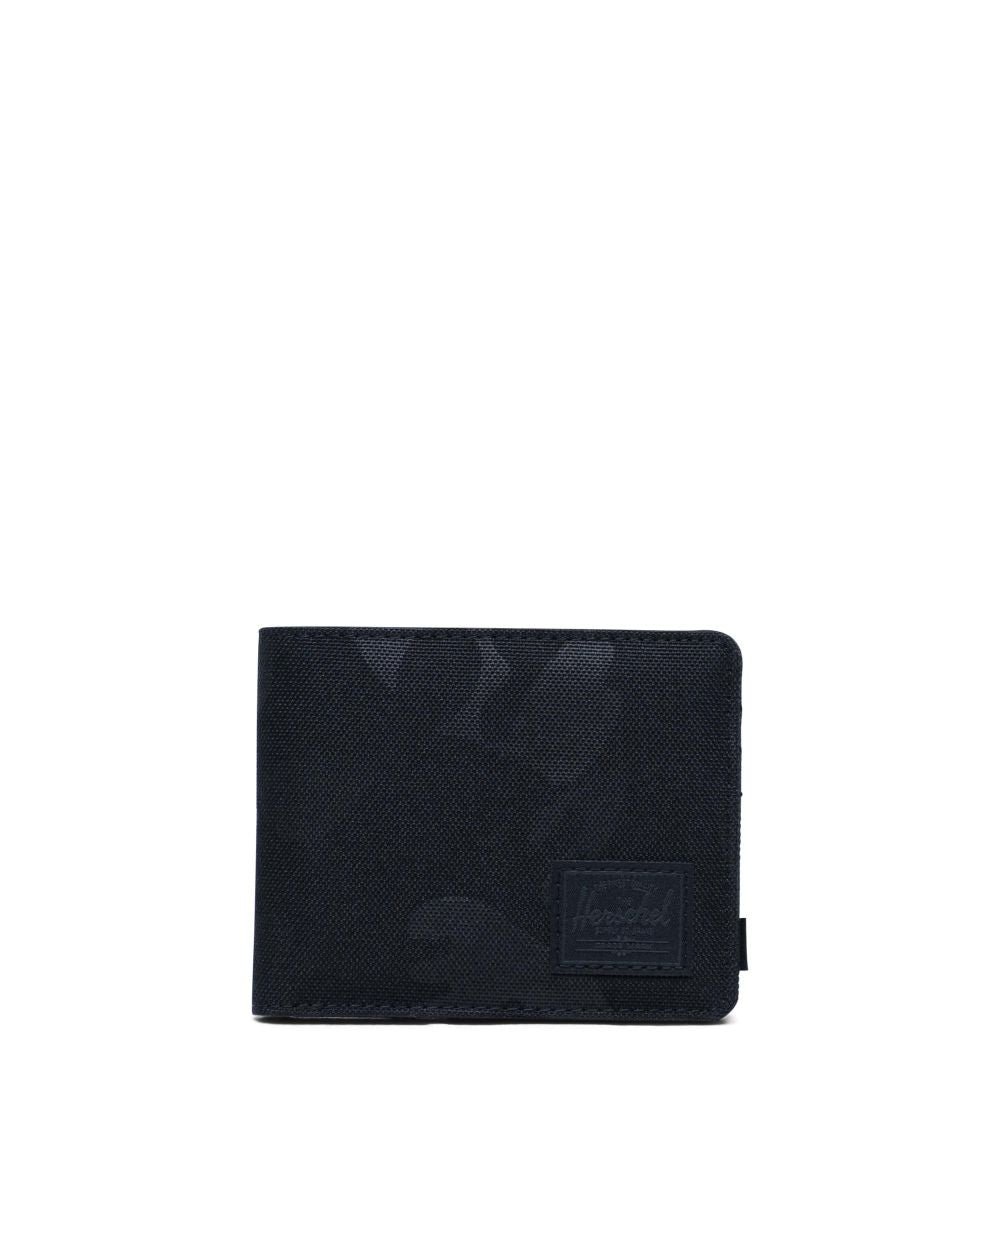 Herschel Supply Co - Roy+ Wallet, Black Tonal Camo